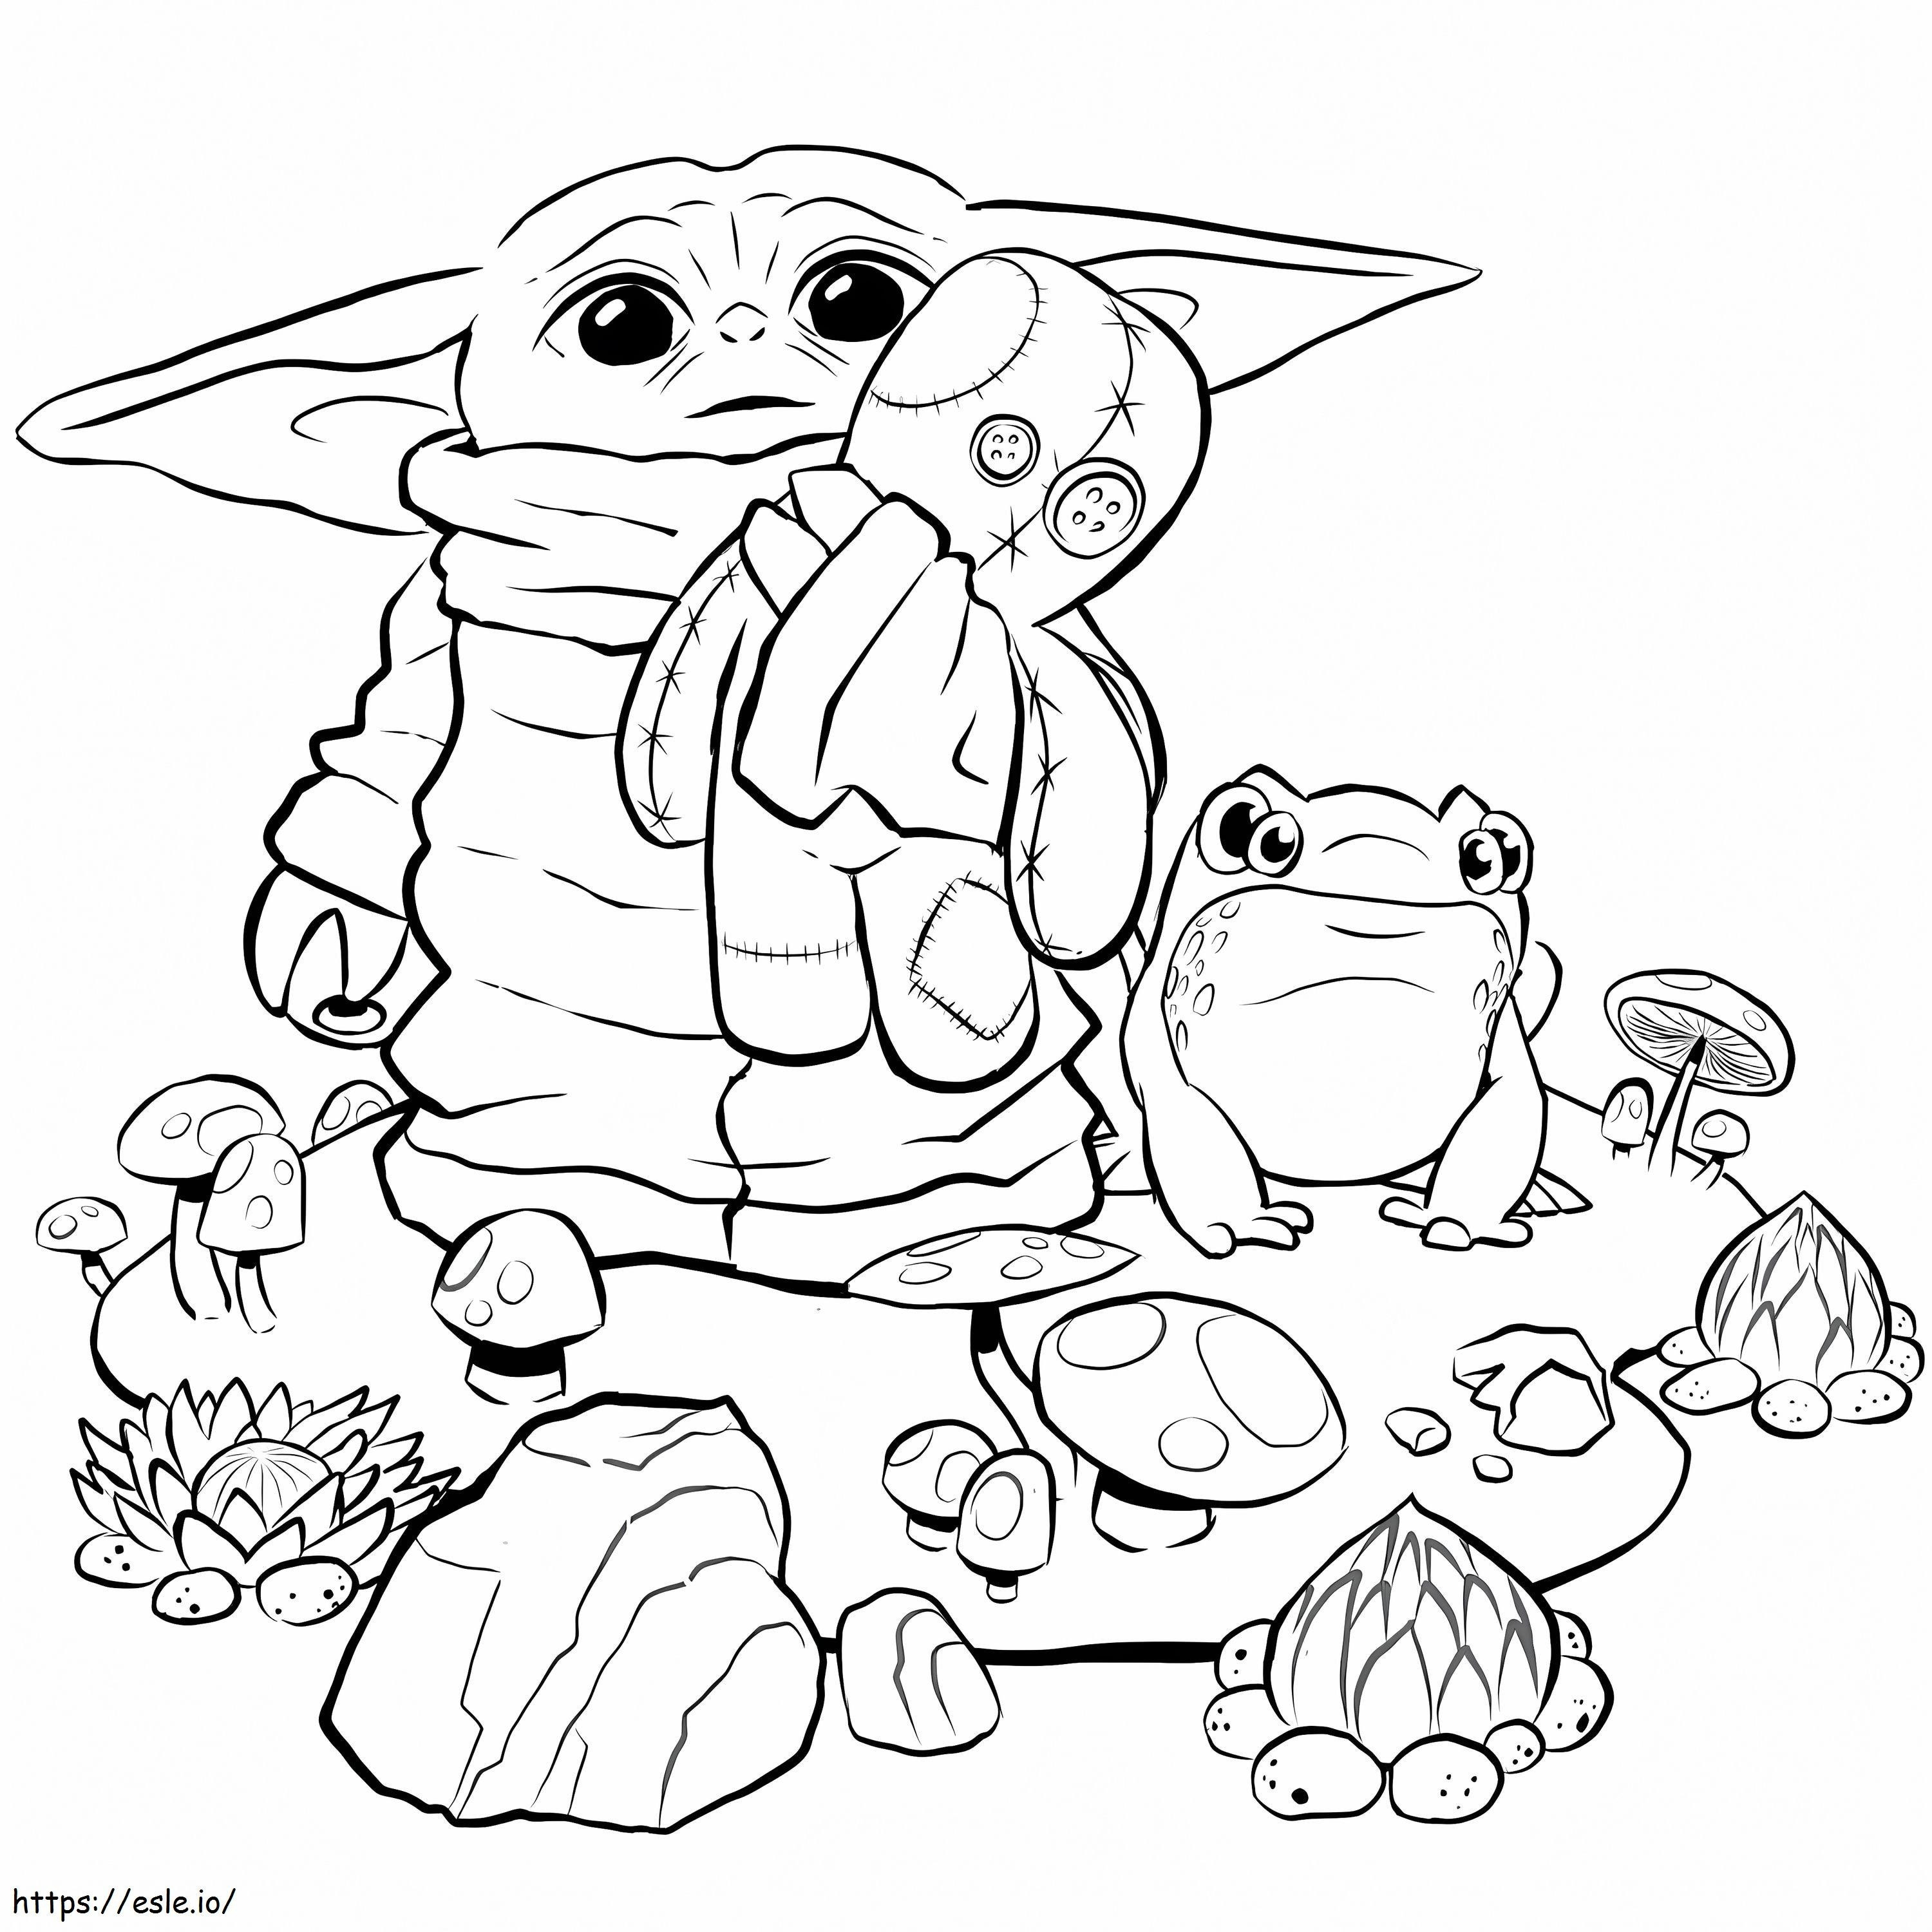 Bebé Yoda sosteniendo un juguete de rana para colorear